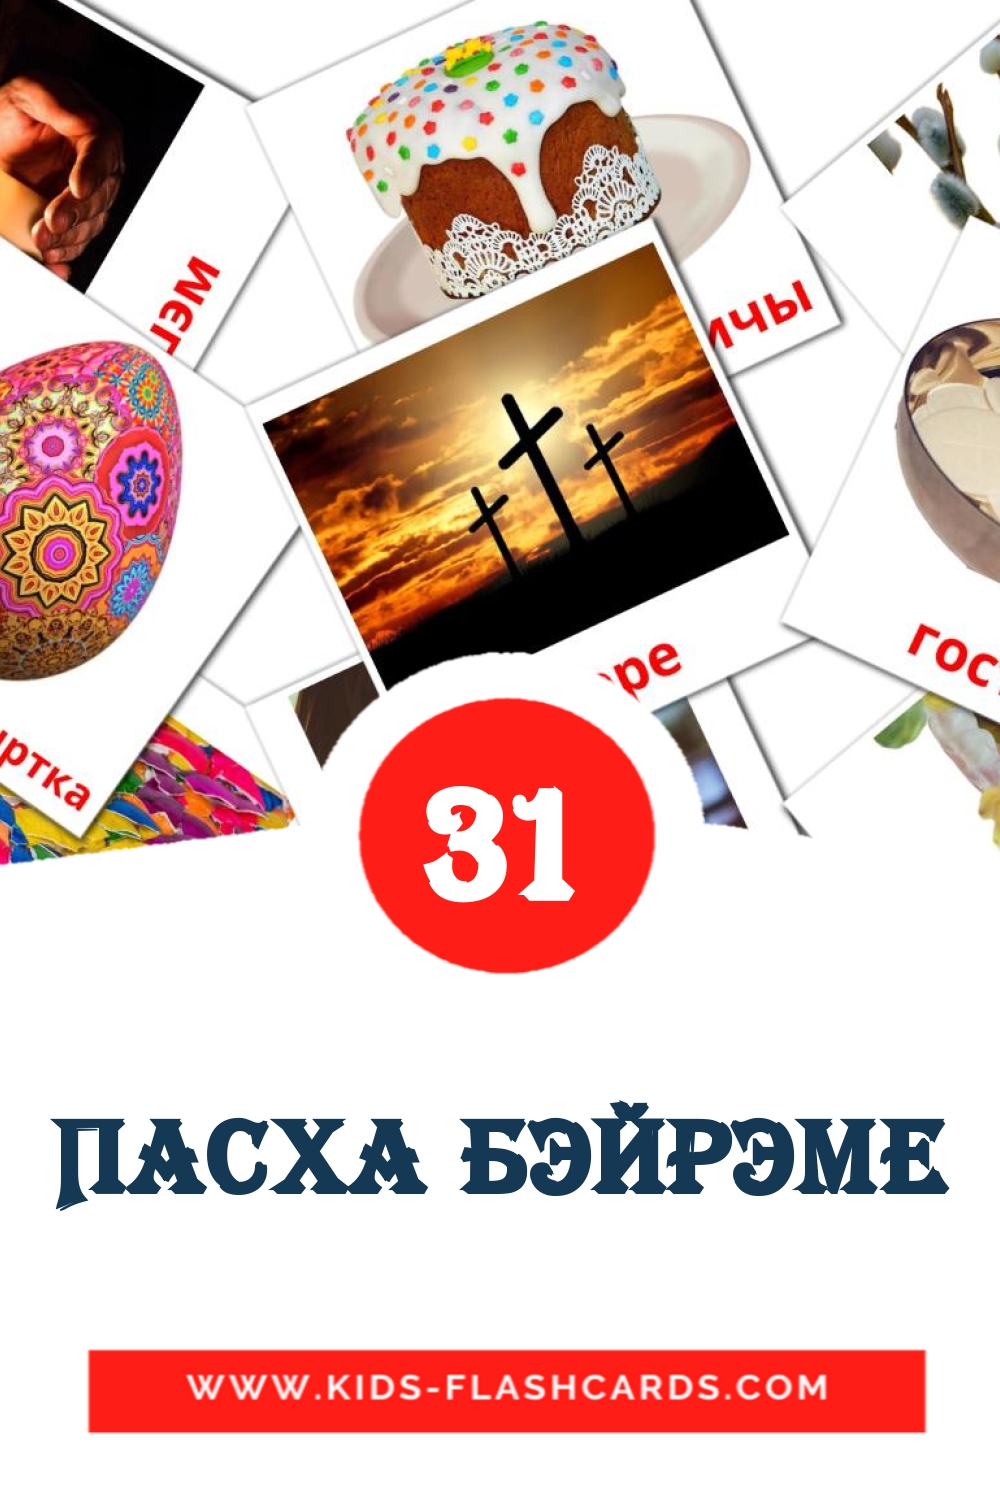 31 Cartões com Imagens de Пасха бэйрэме para Jardim de Infância em tatar